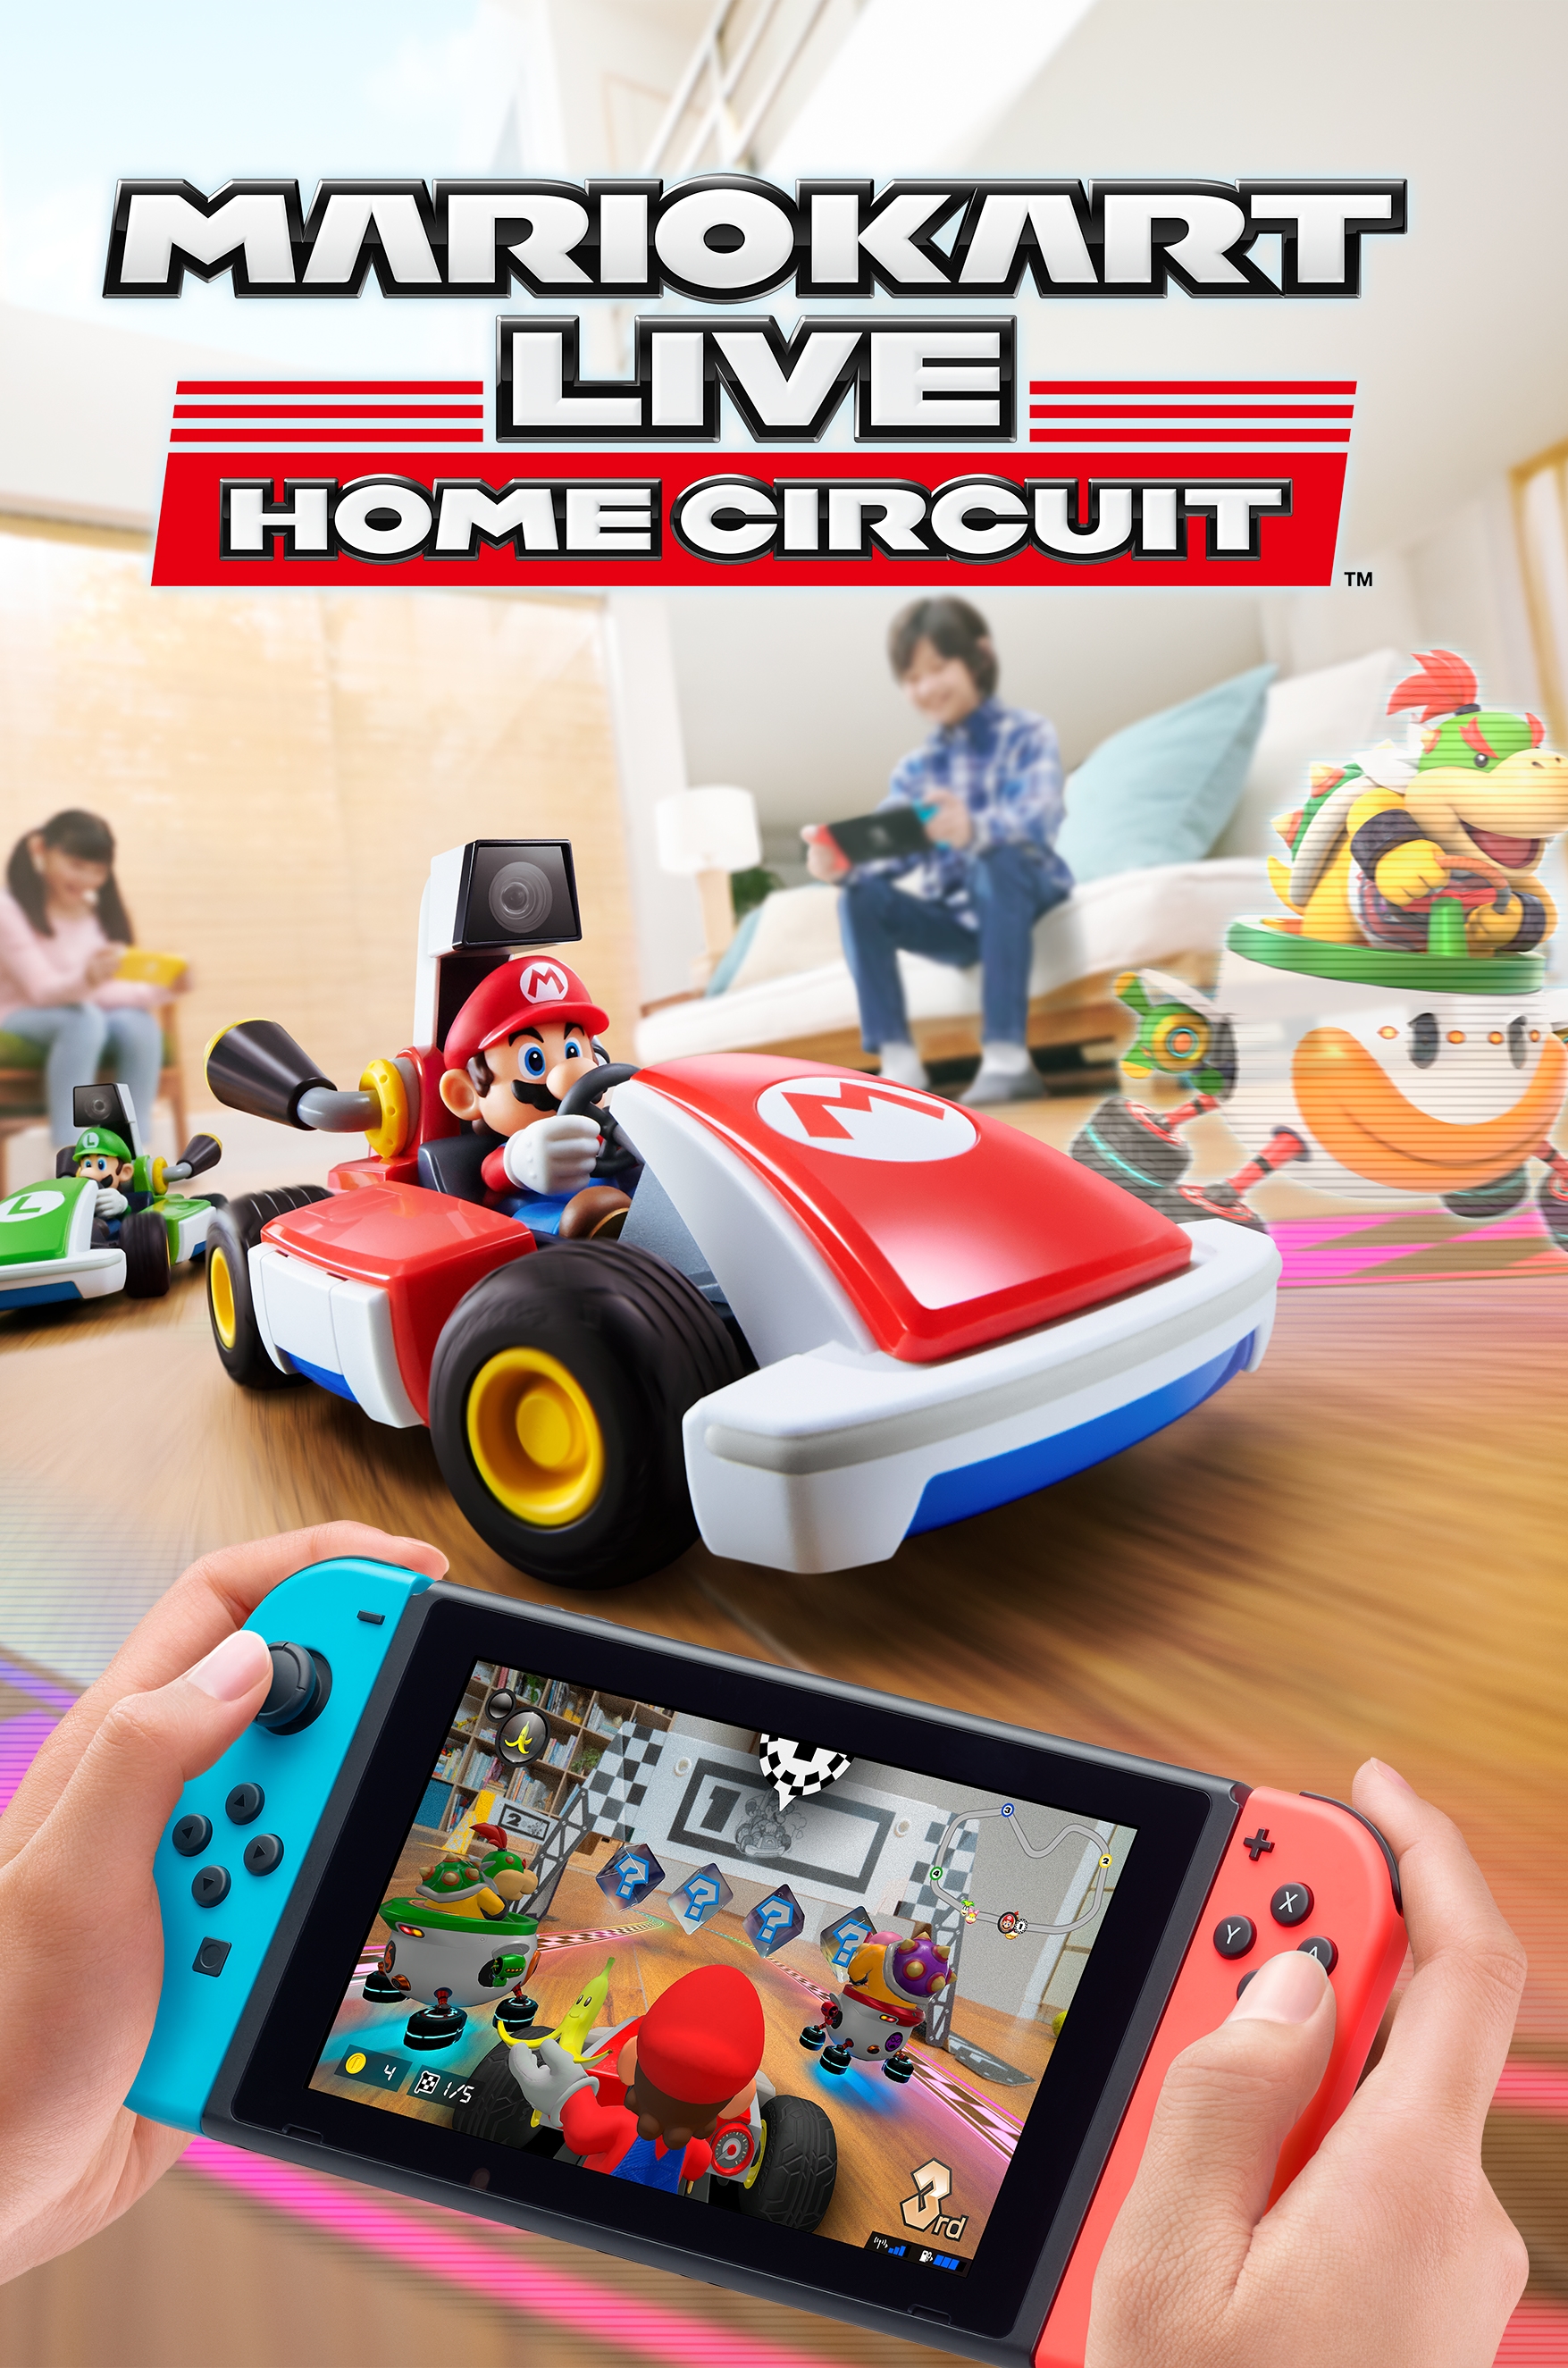 jaquette reduite de Mario Kart Live: Home Circuit sur Switch